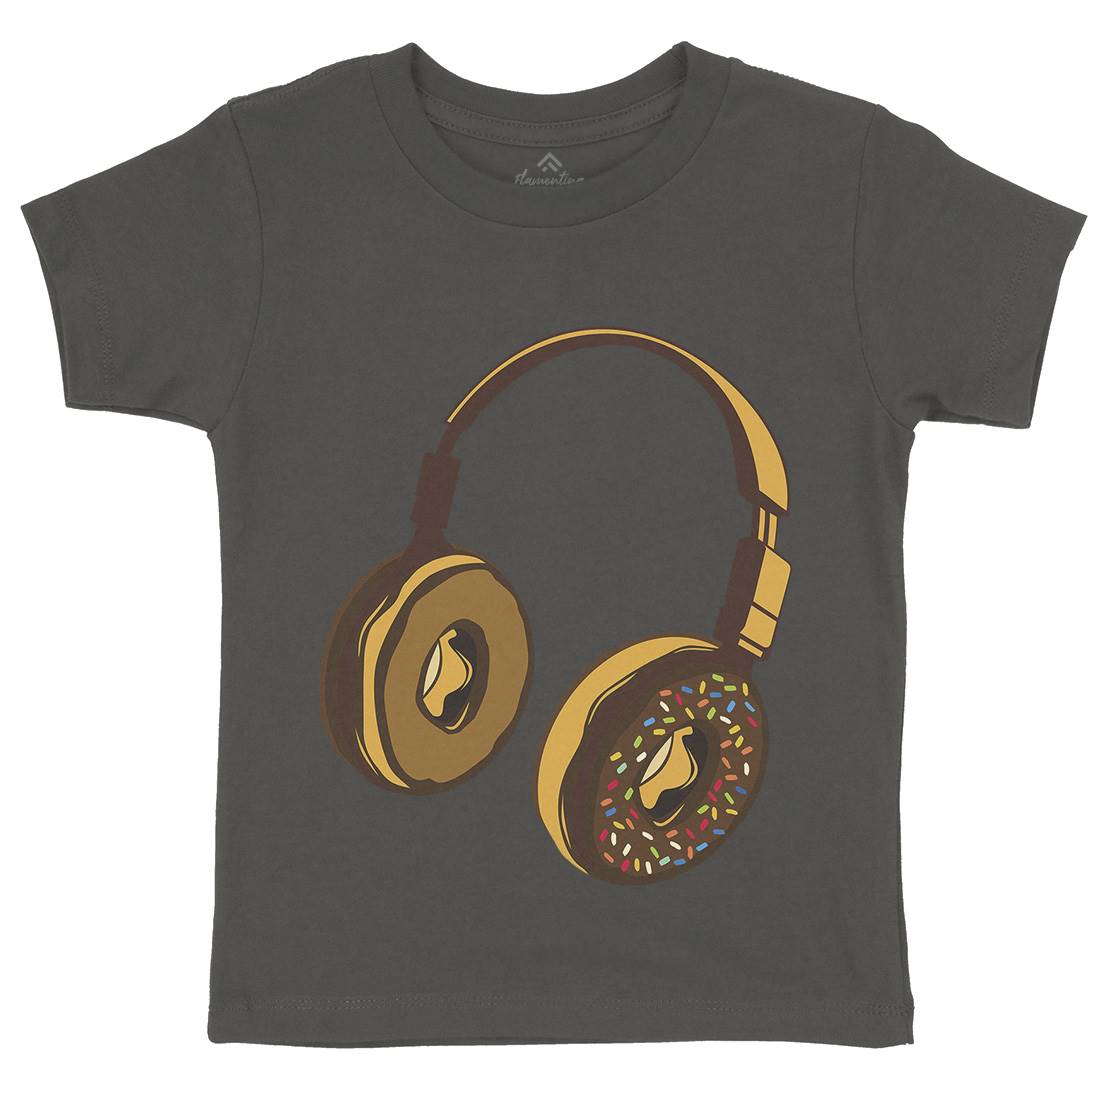 Headphone Donut Kids Organic Crew Neck T-Shirt Music B050